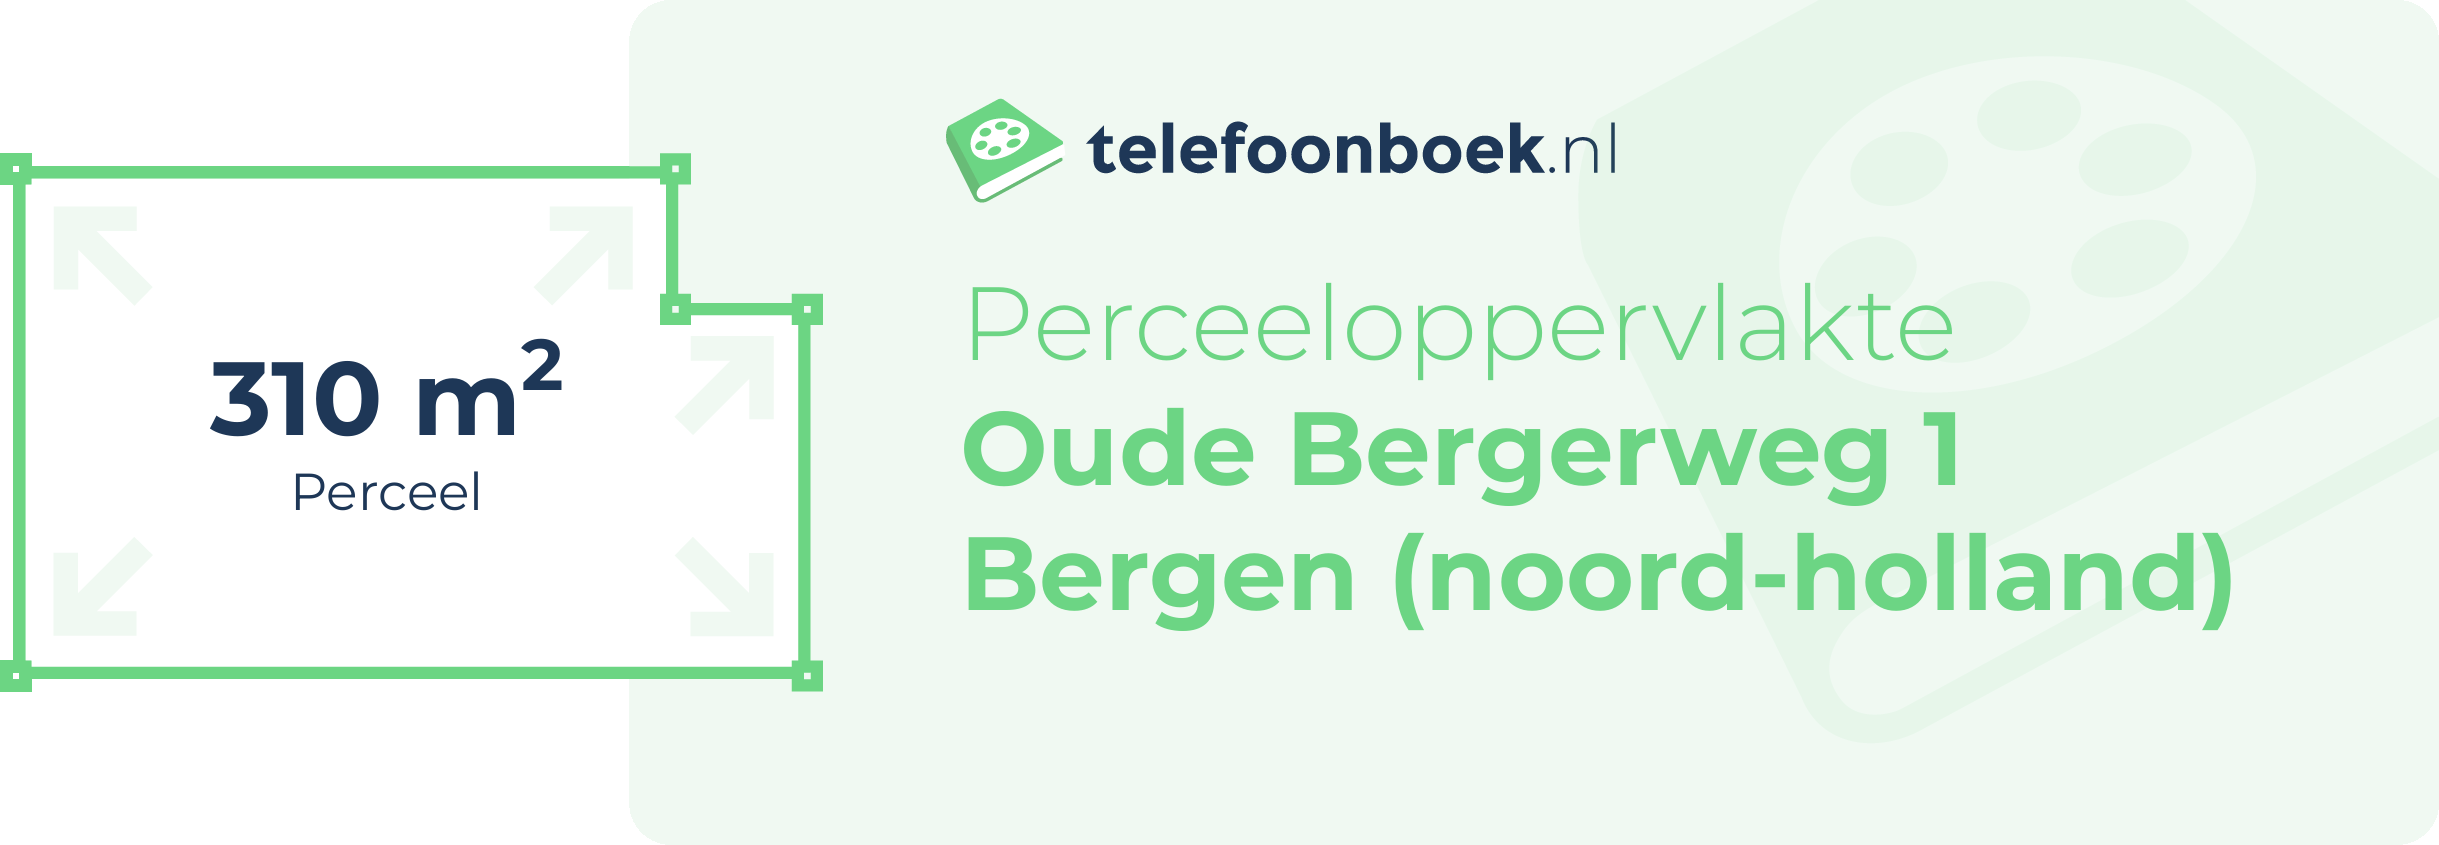 Perceeloppervlakte Oude Bergerweg 1 Bergen (Noord-Holland)